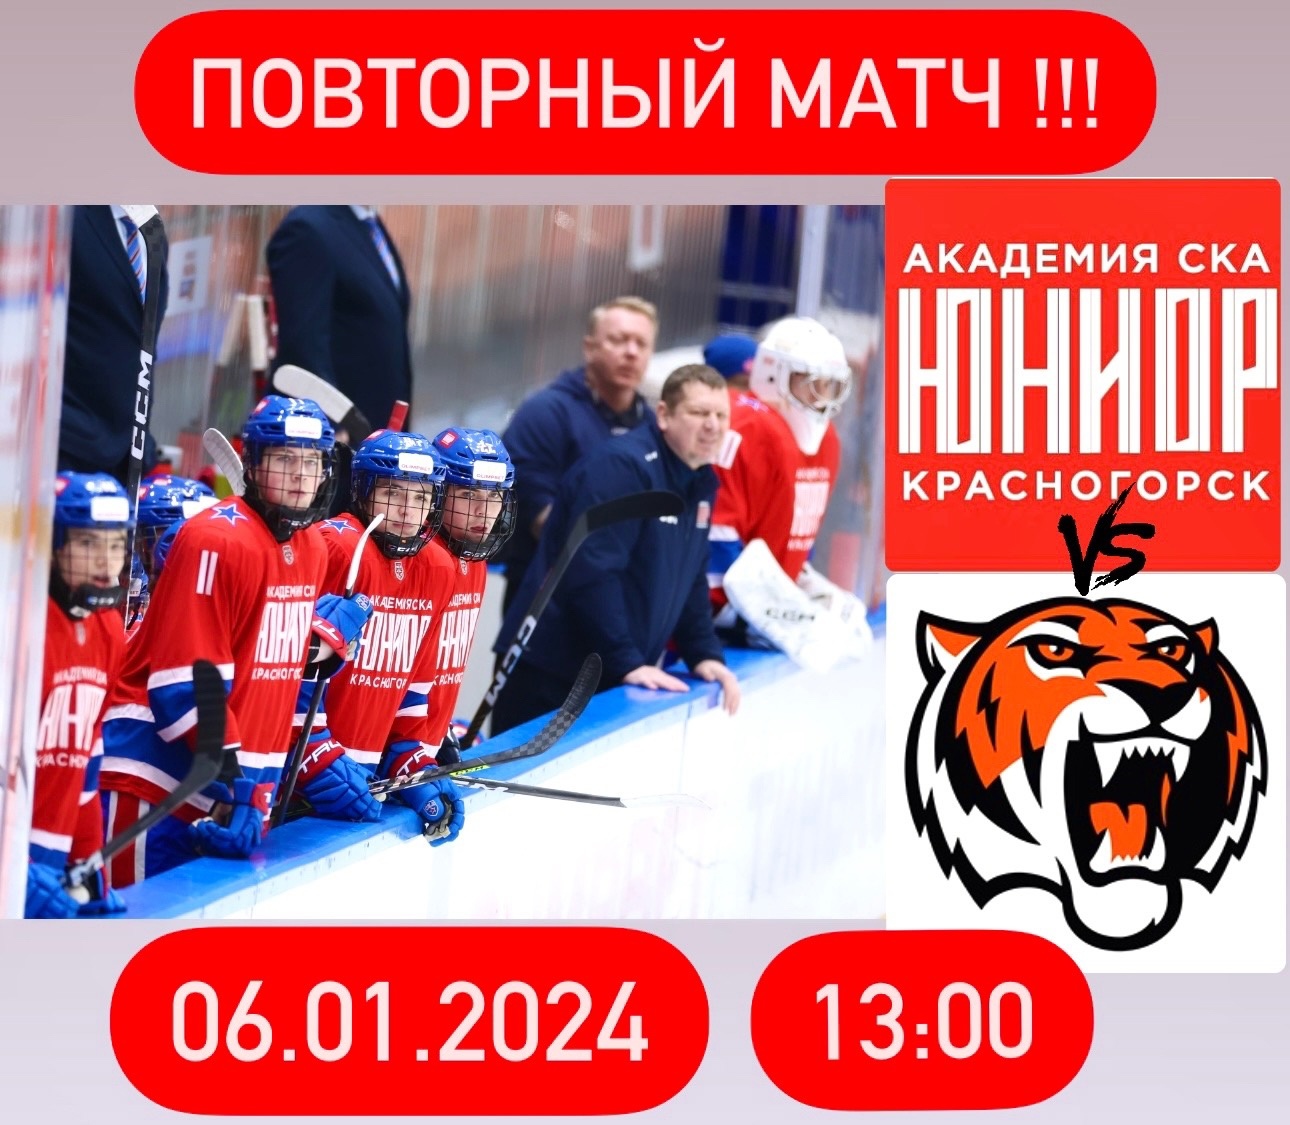 Повторный матч между командами «Академия СКА-Юриор» vs. «Амурские тигры».